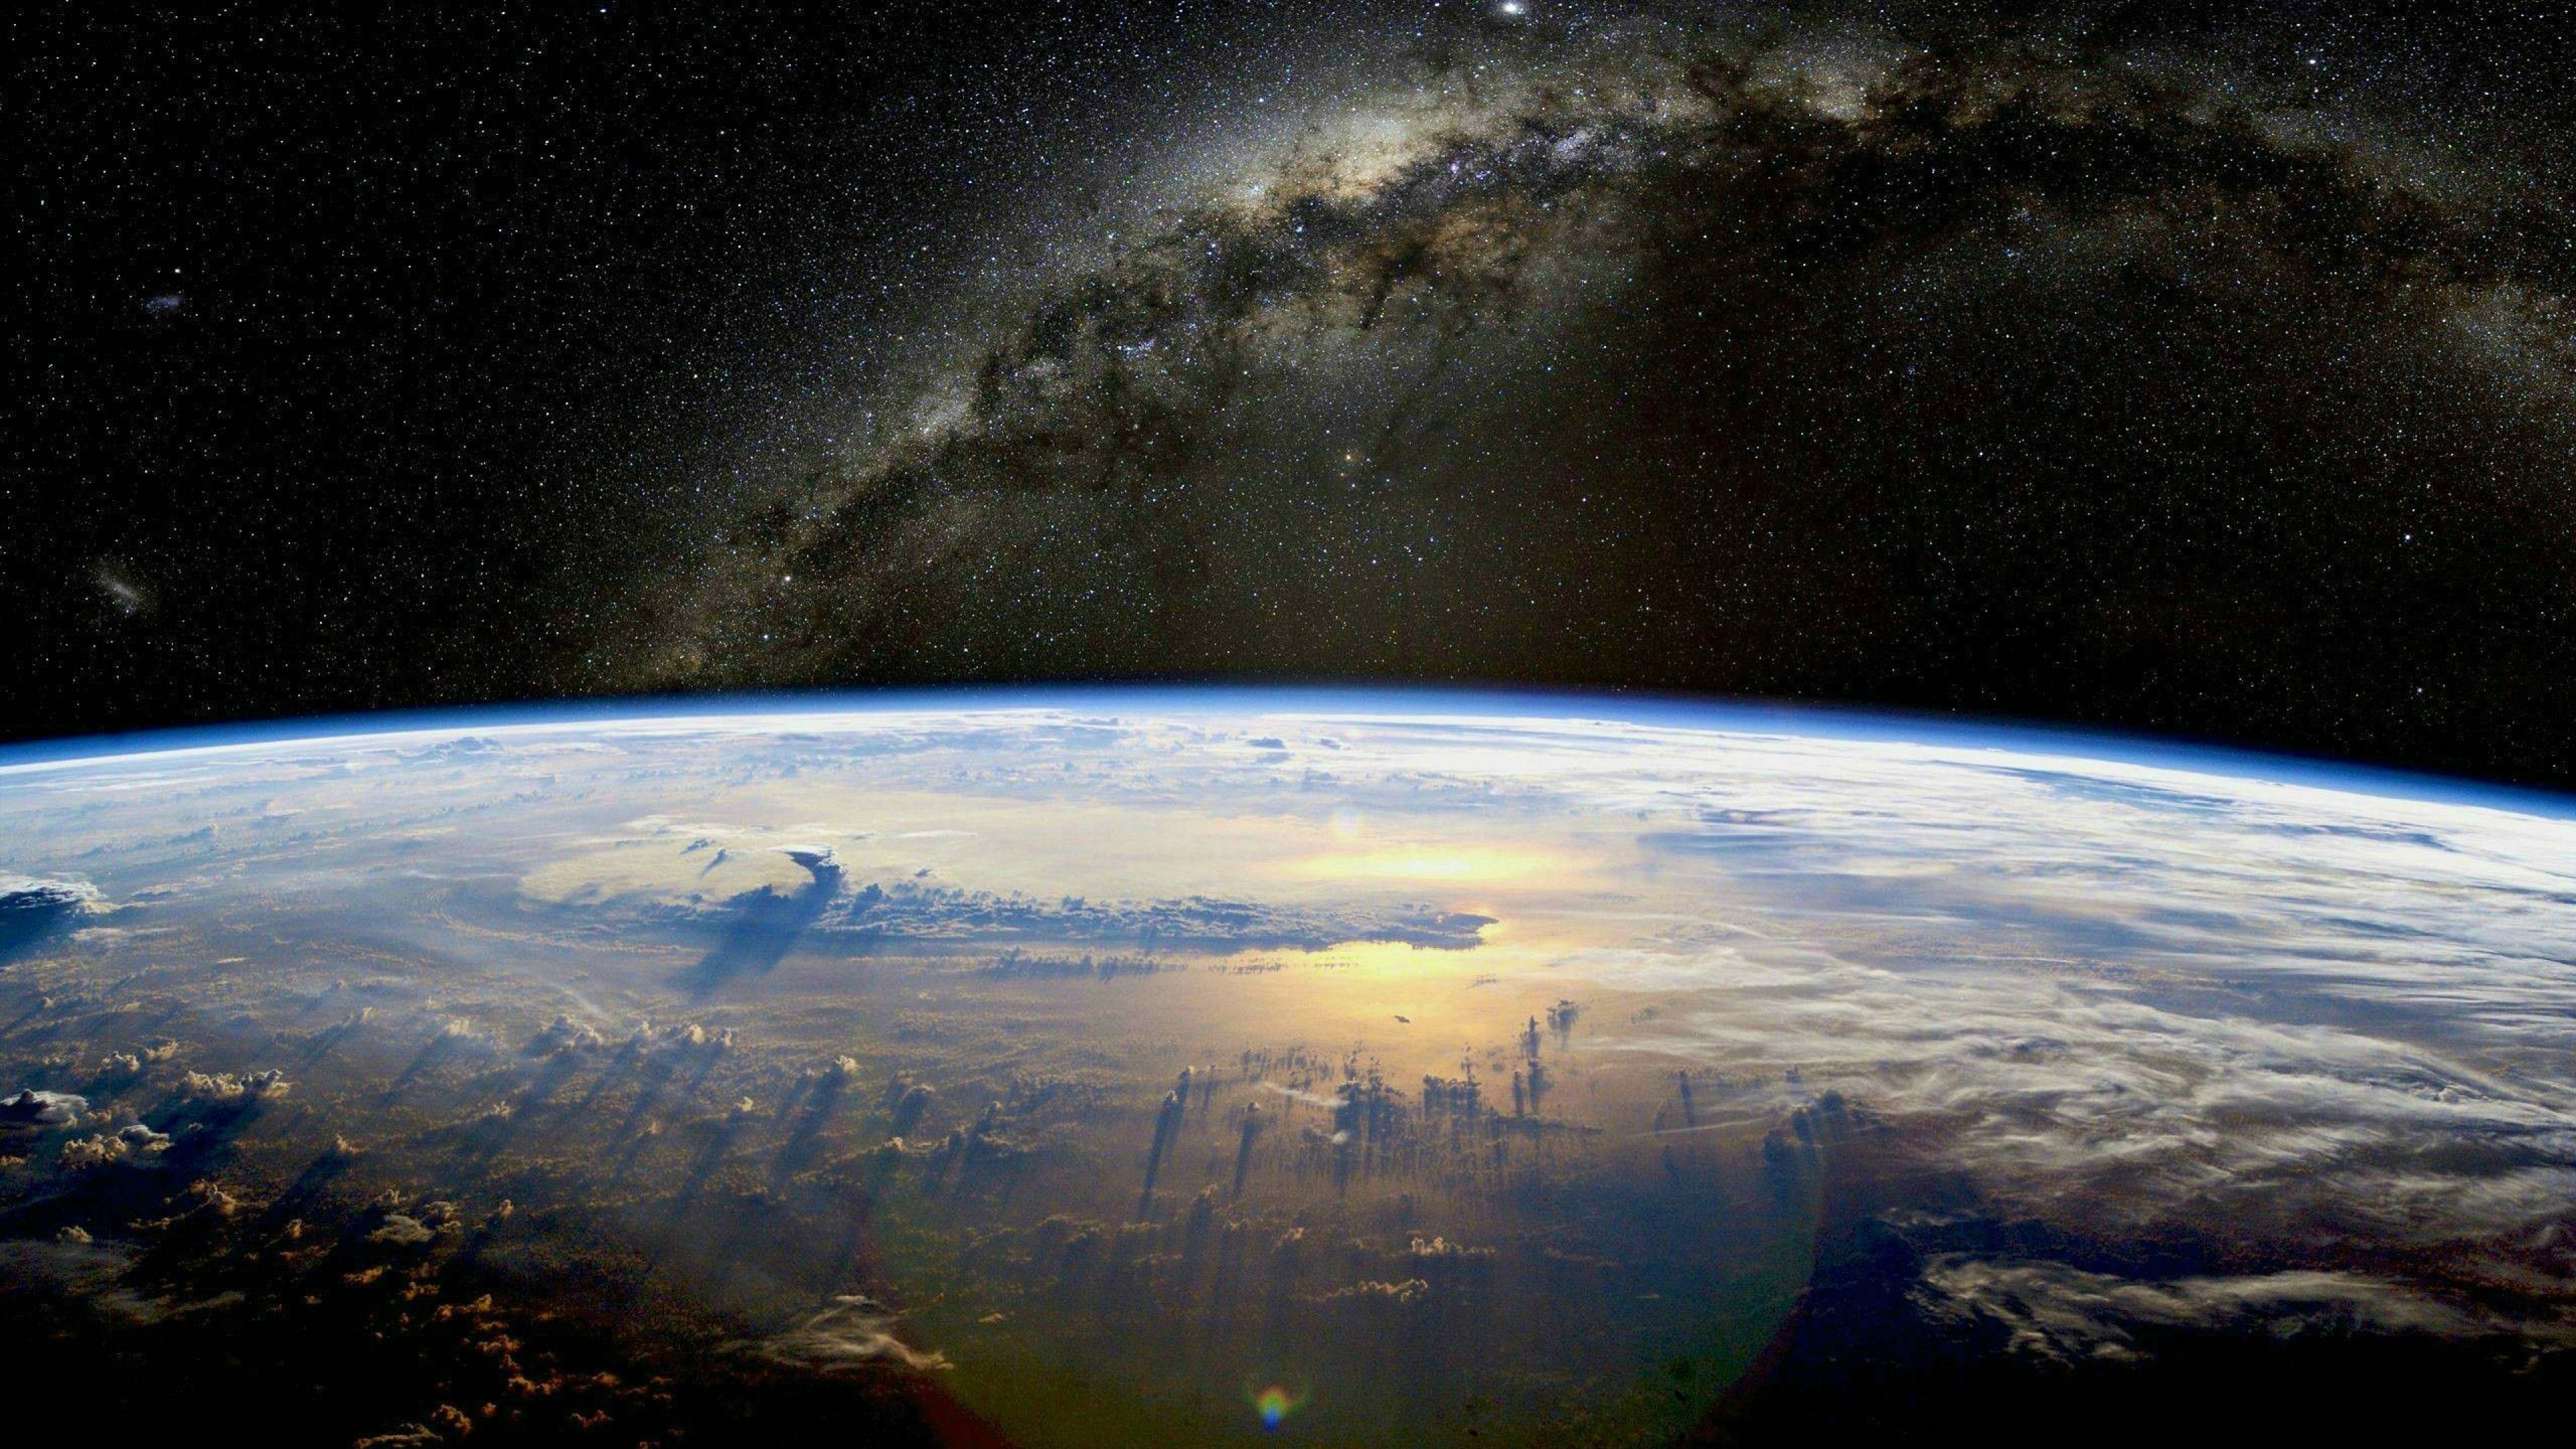 Обои реальном времени. Космос Галактика Млечный путь планеты. О земле и космосе. Вид земли из космоса. Обои космос.